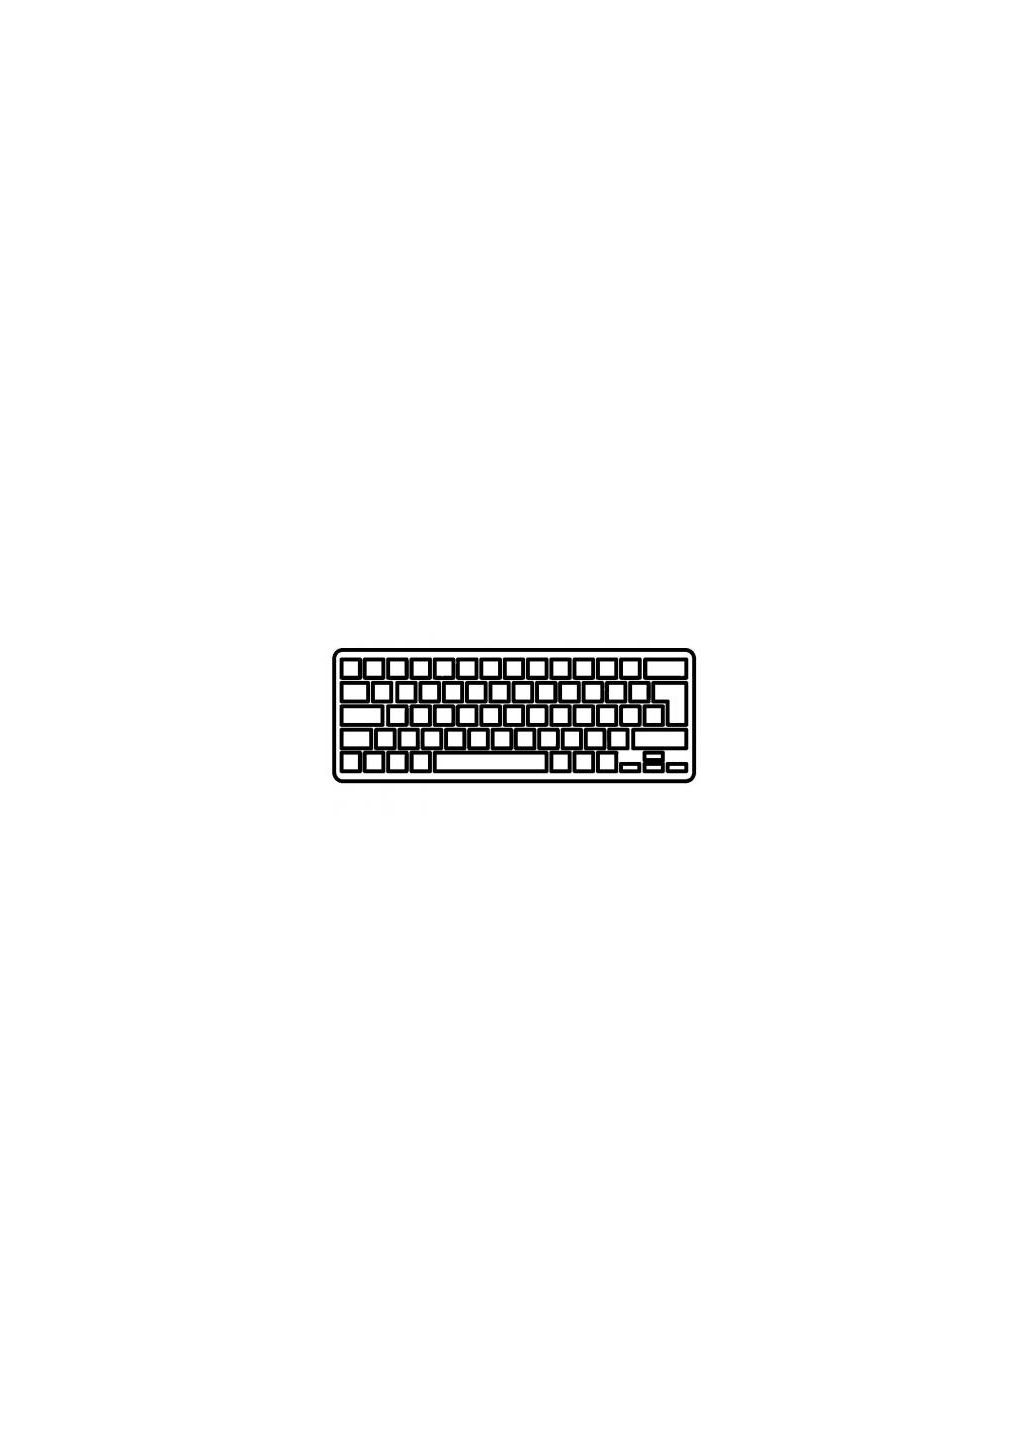 Клавиатура ноутбука Aspire V5531/V5-551/V5-571 черная без рамки RU (A43578) Acer aspire v5-531/v5-551/v5-571 черная без рамки ua (276706578)